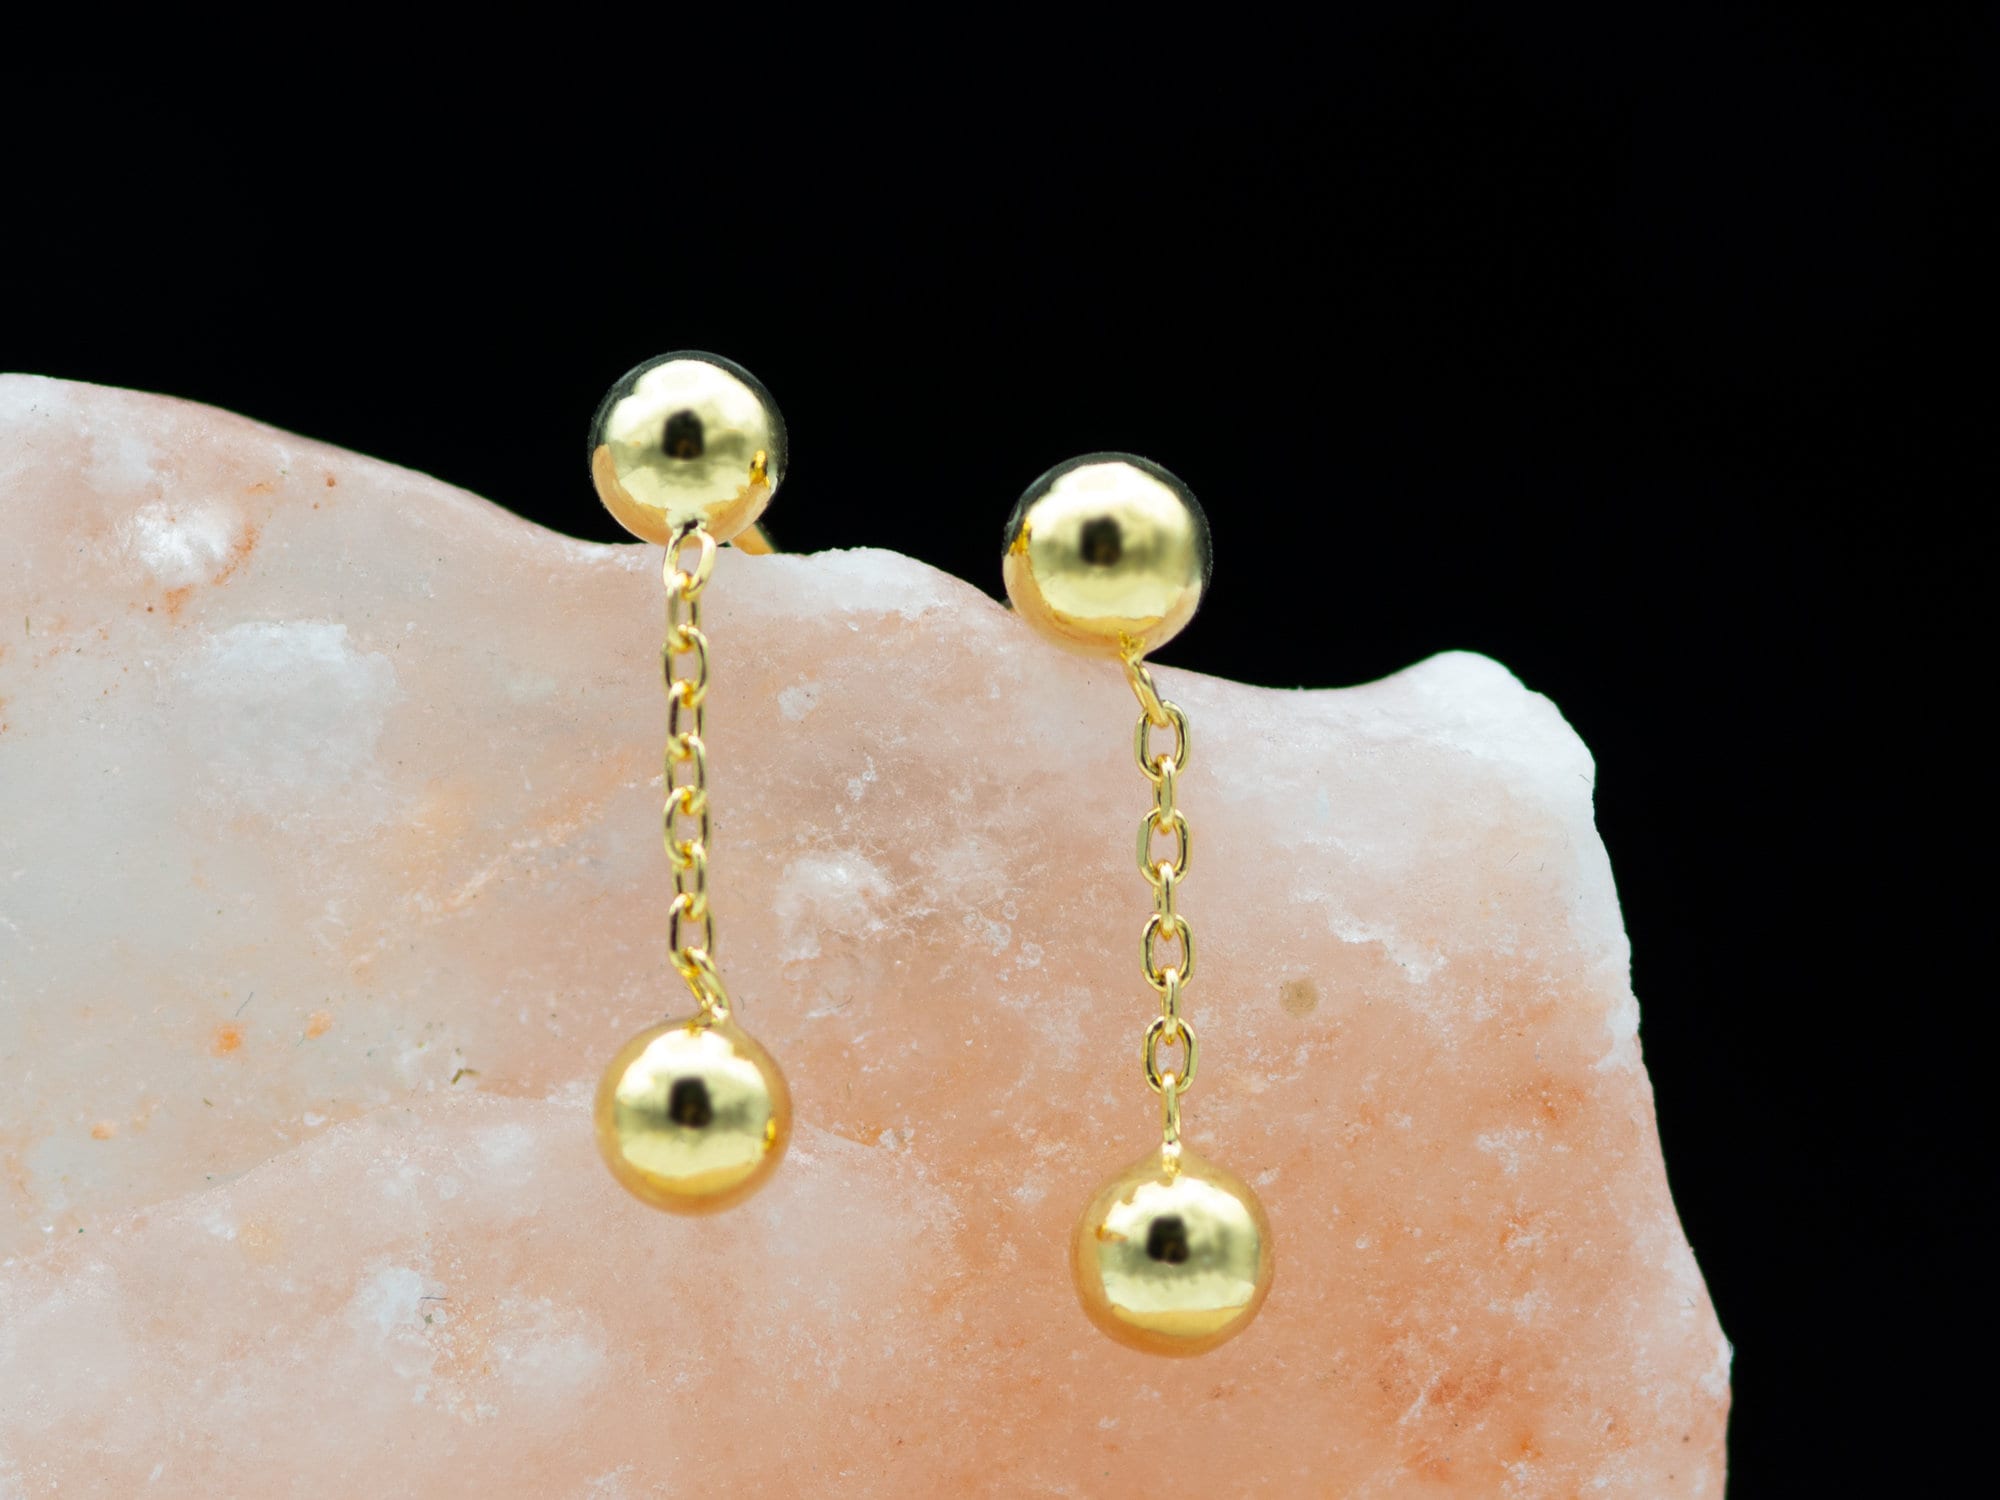  Chain Earrings Dainty Earrings Minimalist Hypoallergenic  Earrings for Women Sensitive Ears Gold Stud Earrings for Women Dangle  Earrings for Men(3cm-Gold): Clothing, Shoes & Jewelry